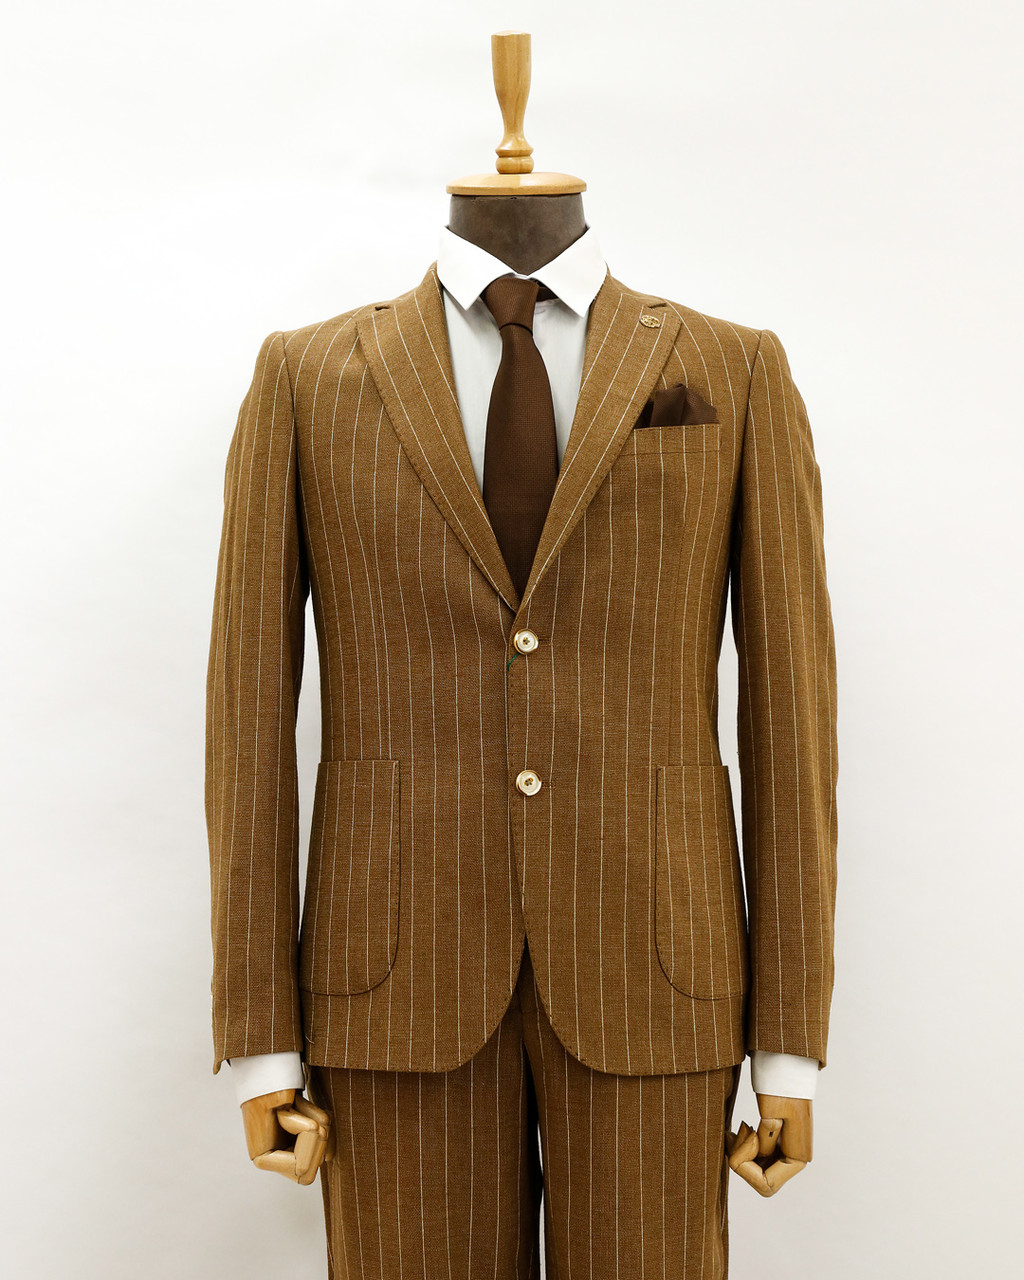 Мужской деловой костюм «UM&H 47431988» коричневый, фото 1